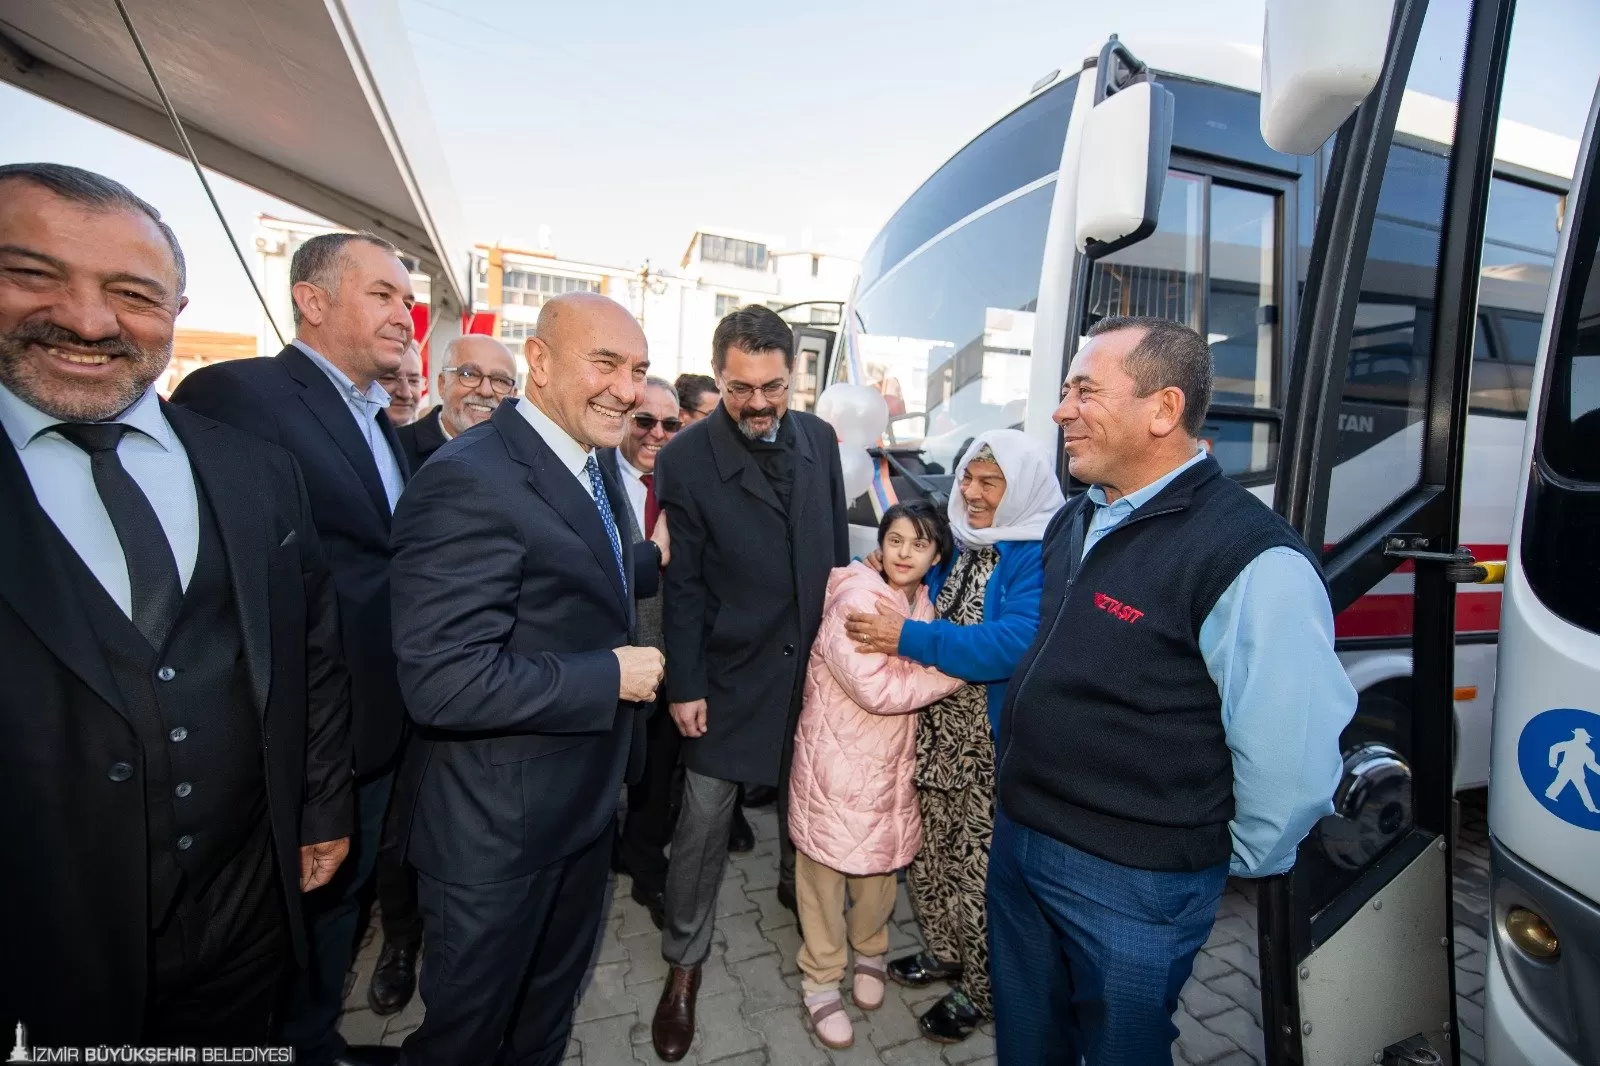 İzmir Büyükşehir Belediye Başkanı Tunç Soyer, Bergama'da İZTAŞIT'ın açılışını yaptı. Soyer, Bergama'ya İZBAN'ı da getireceğini söyledi.